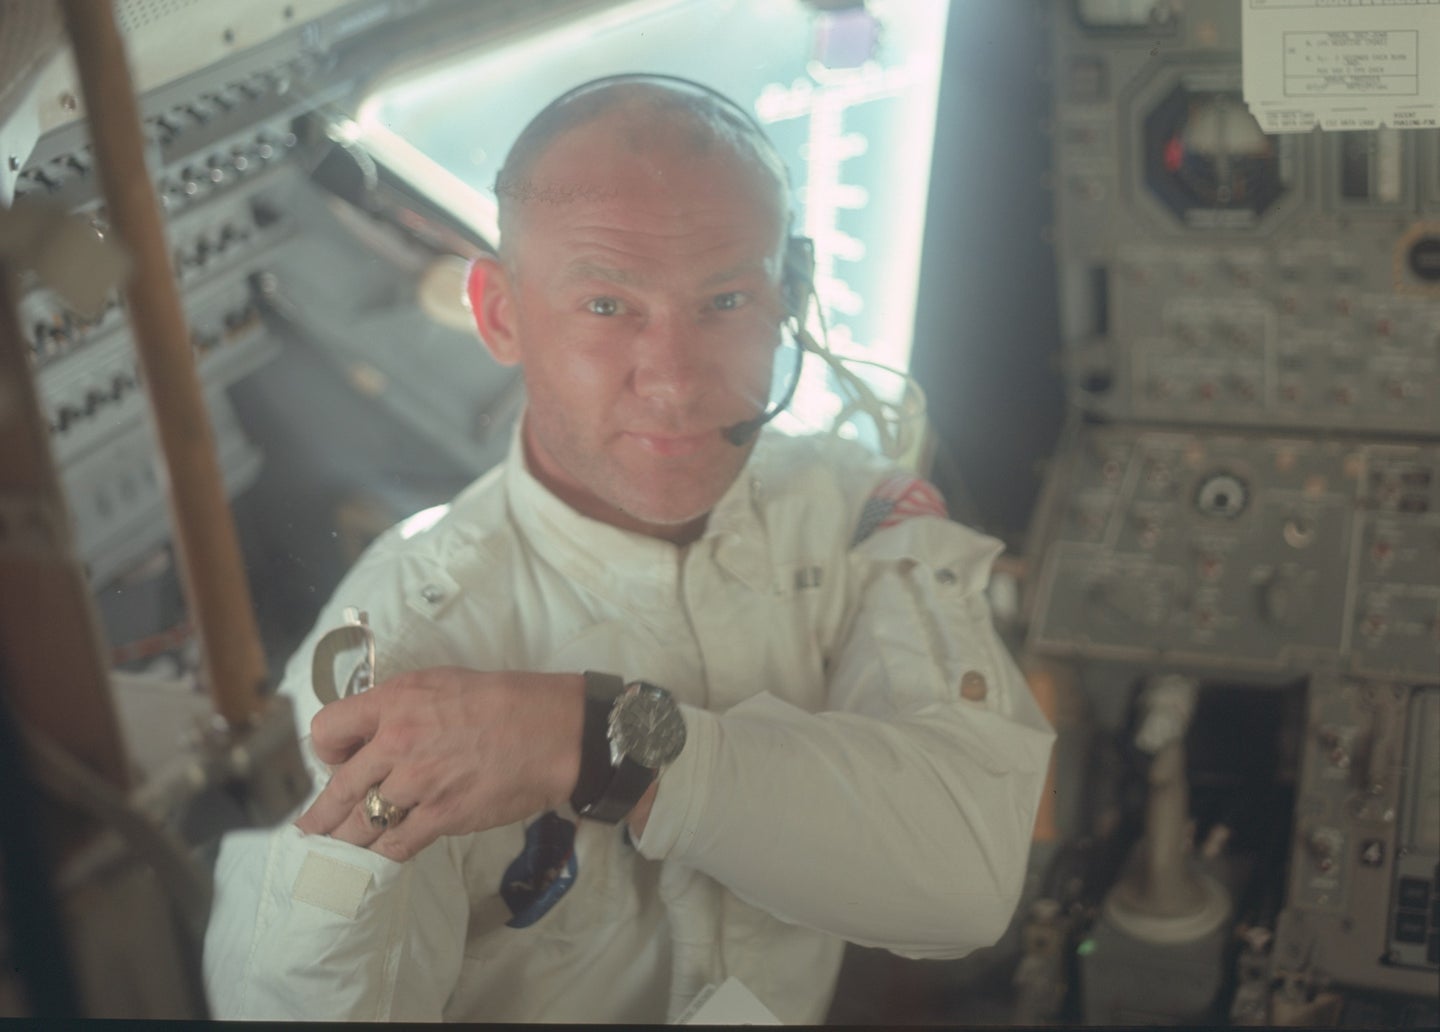 NASA astronaut Buzz Aldrin on Apollo 11 in a white uniform looking at camera